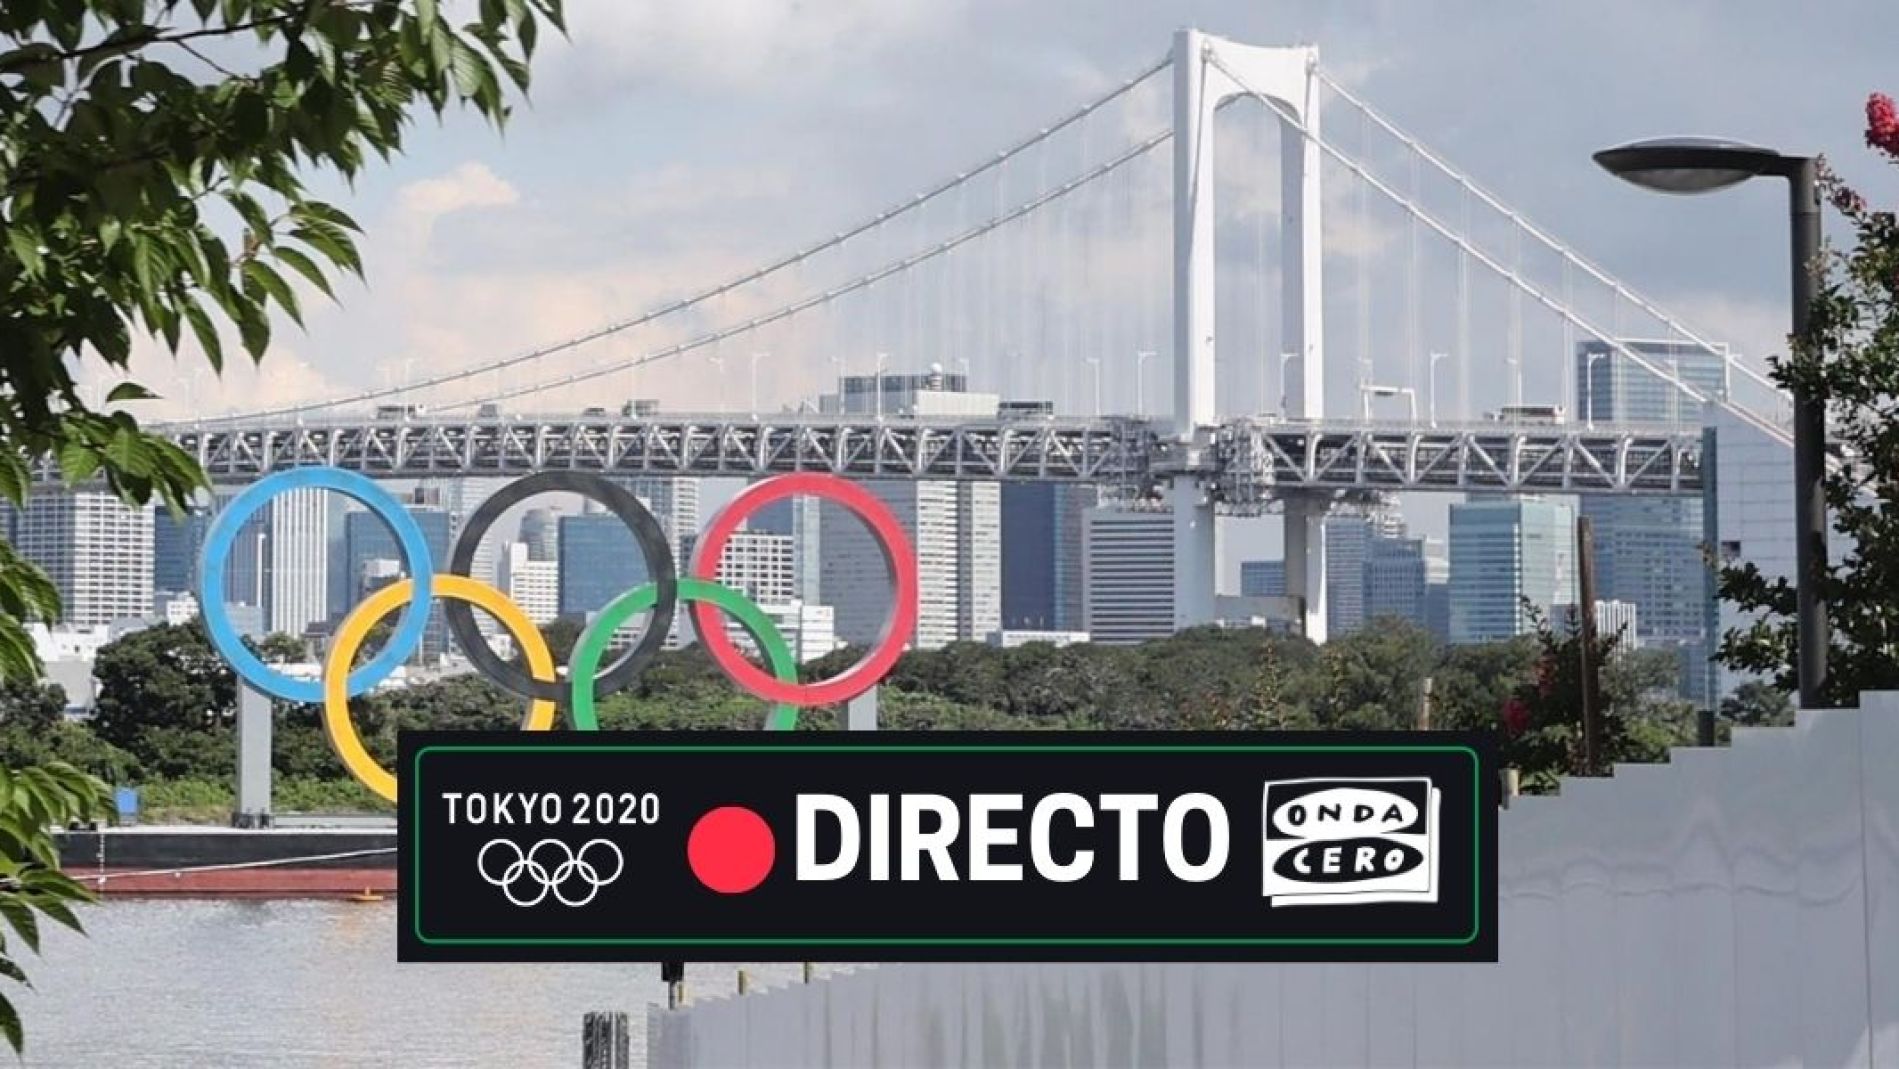 Juegos Olímpicos Tokio 2020, en directo jornada de hoy,lunes 2 de agosto Onda Cero Radio foto